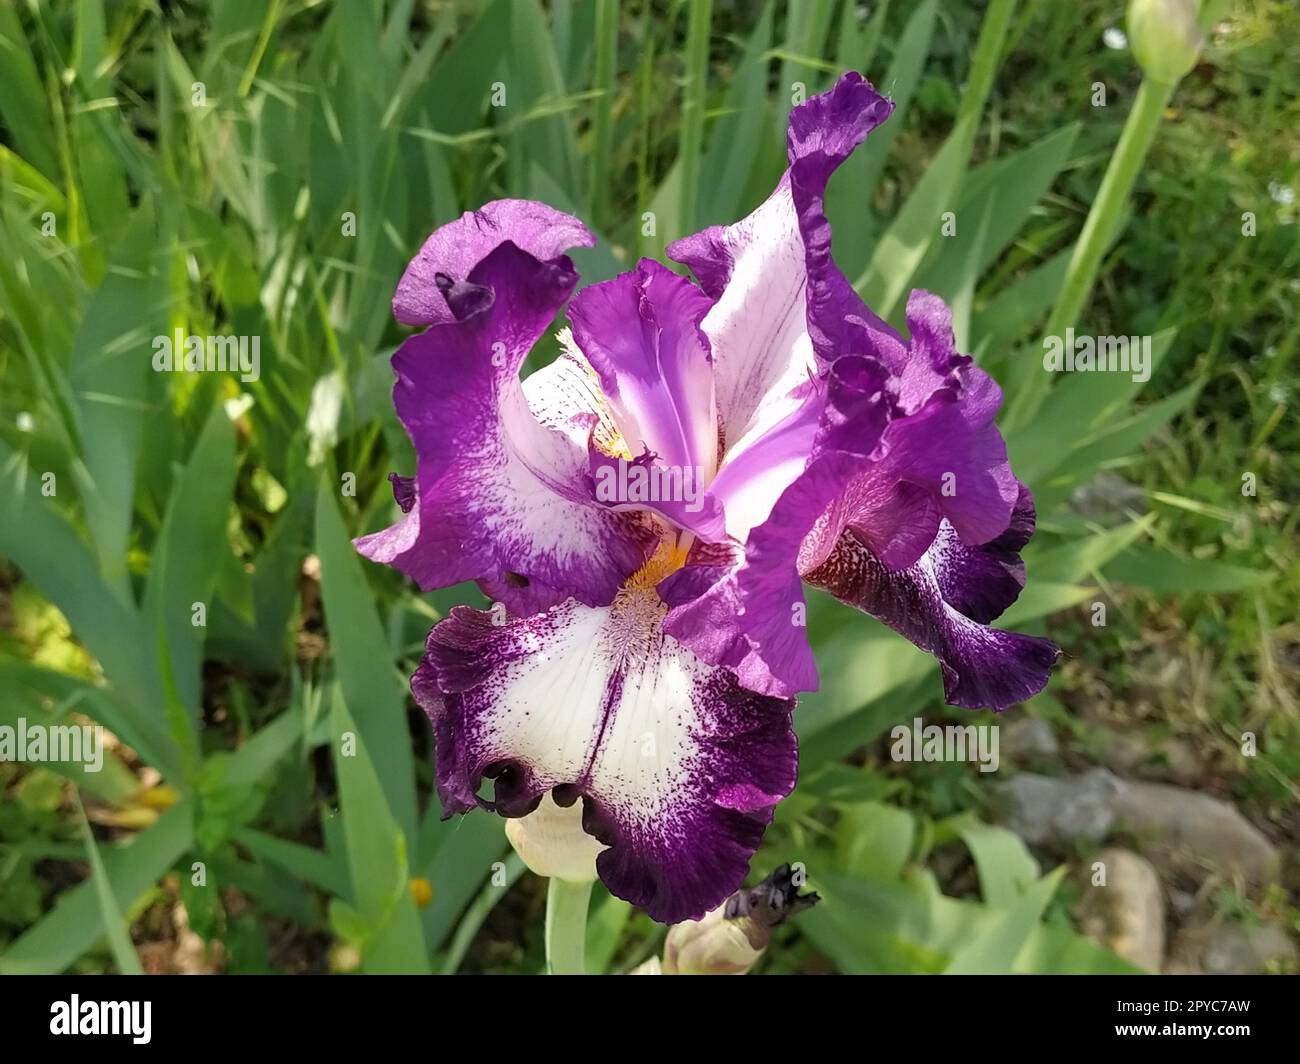 Wunderschöne lila Iris mit einer weißen Mitte. Geschwungene, anmutige, leuchtende Blütenblätter. Grüner unscharfer Hintergrund. Fortpflanzungsgrad der Iris. Große Blütenknospe. Dünne lange Blätter Stockfoto